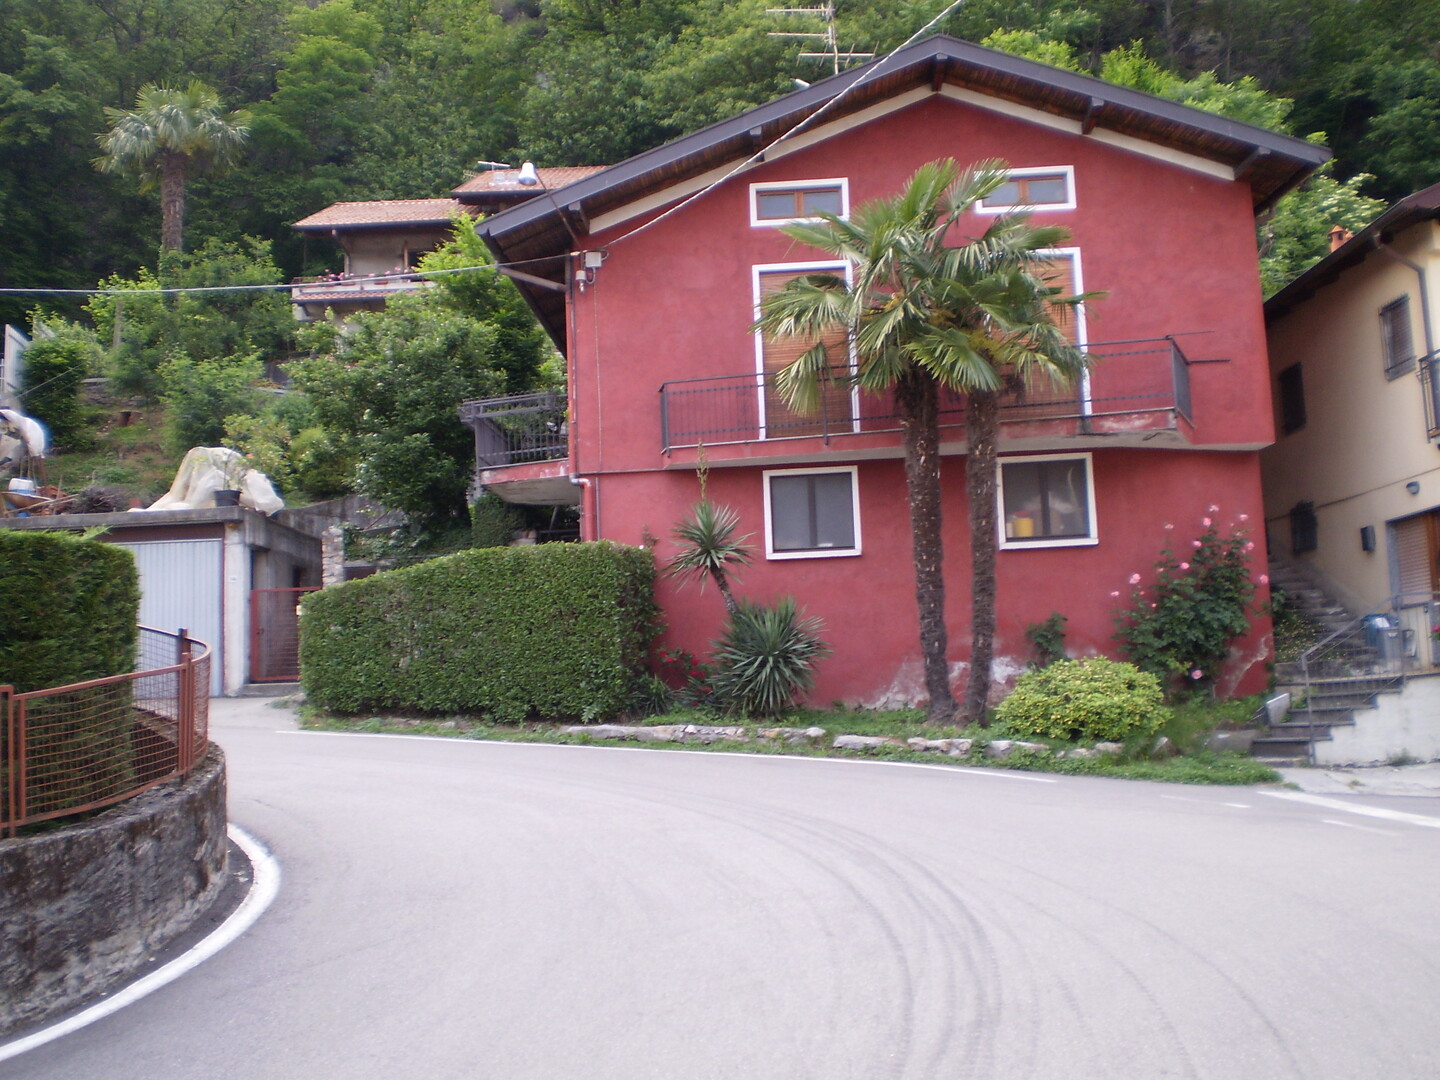 Haus mit Palme in Cireggio.